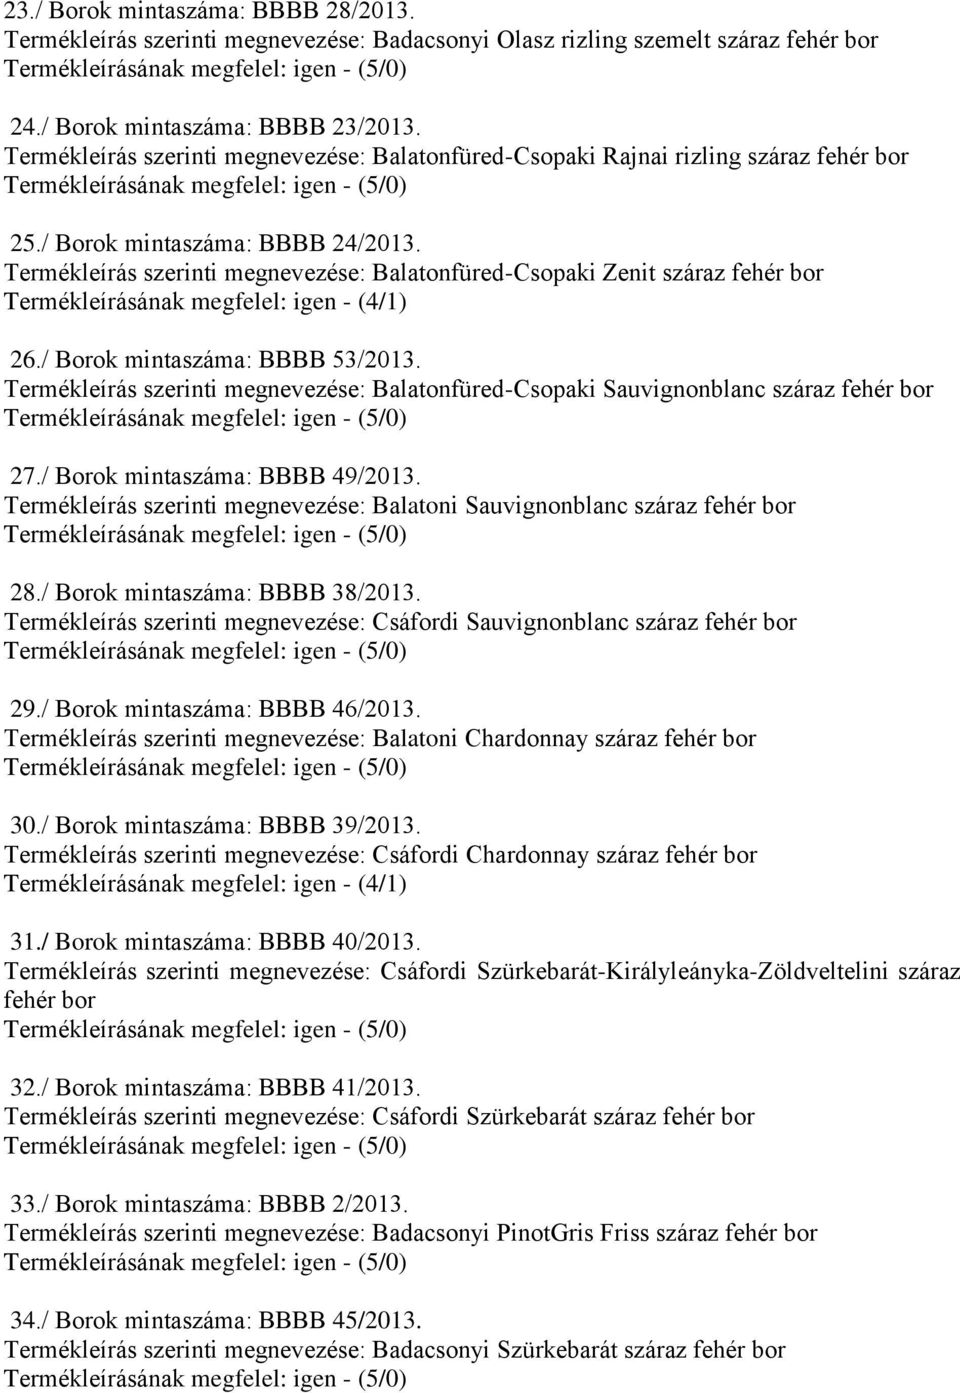 Termékleírás szerinti megnevezése: Balatonfüred-Csopaki Zenit száraz fehér bor 26./ Borok mintaszáma: BBBB 53/2013.